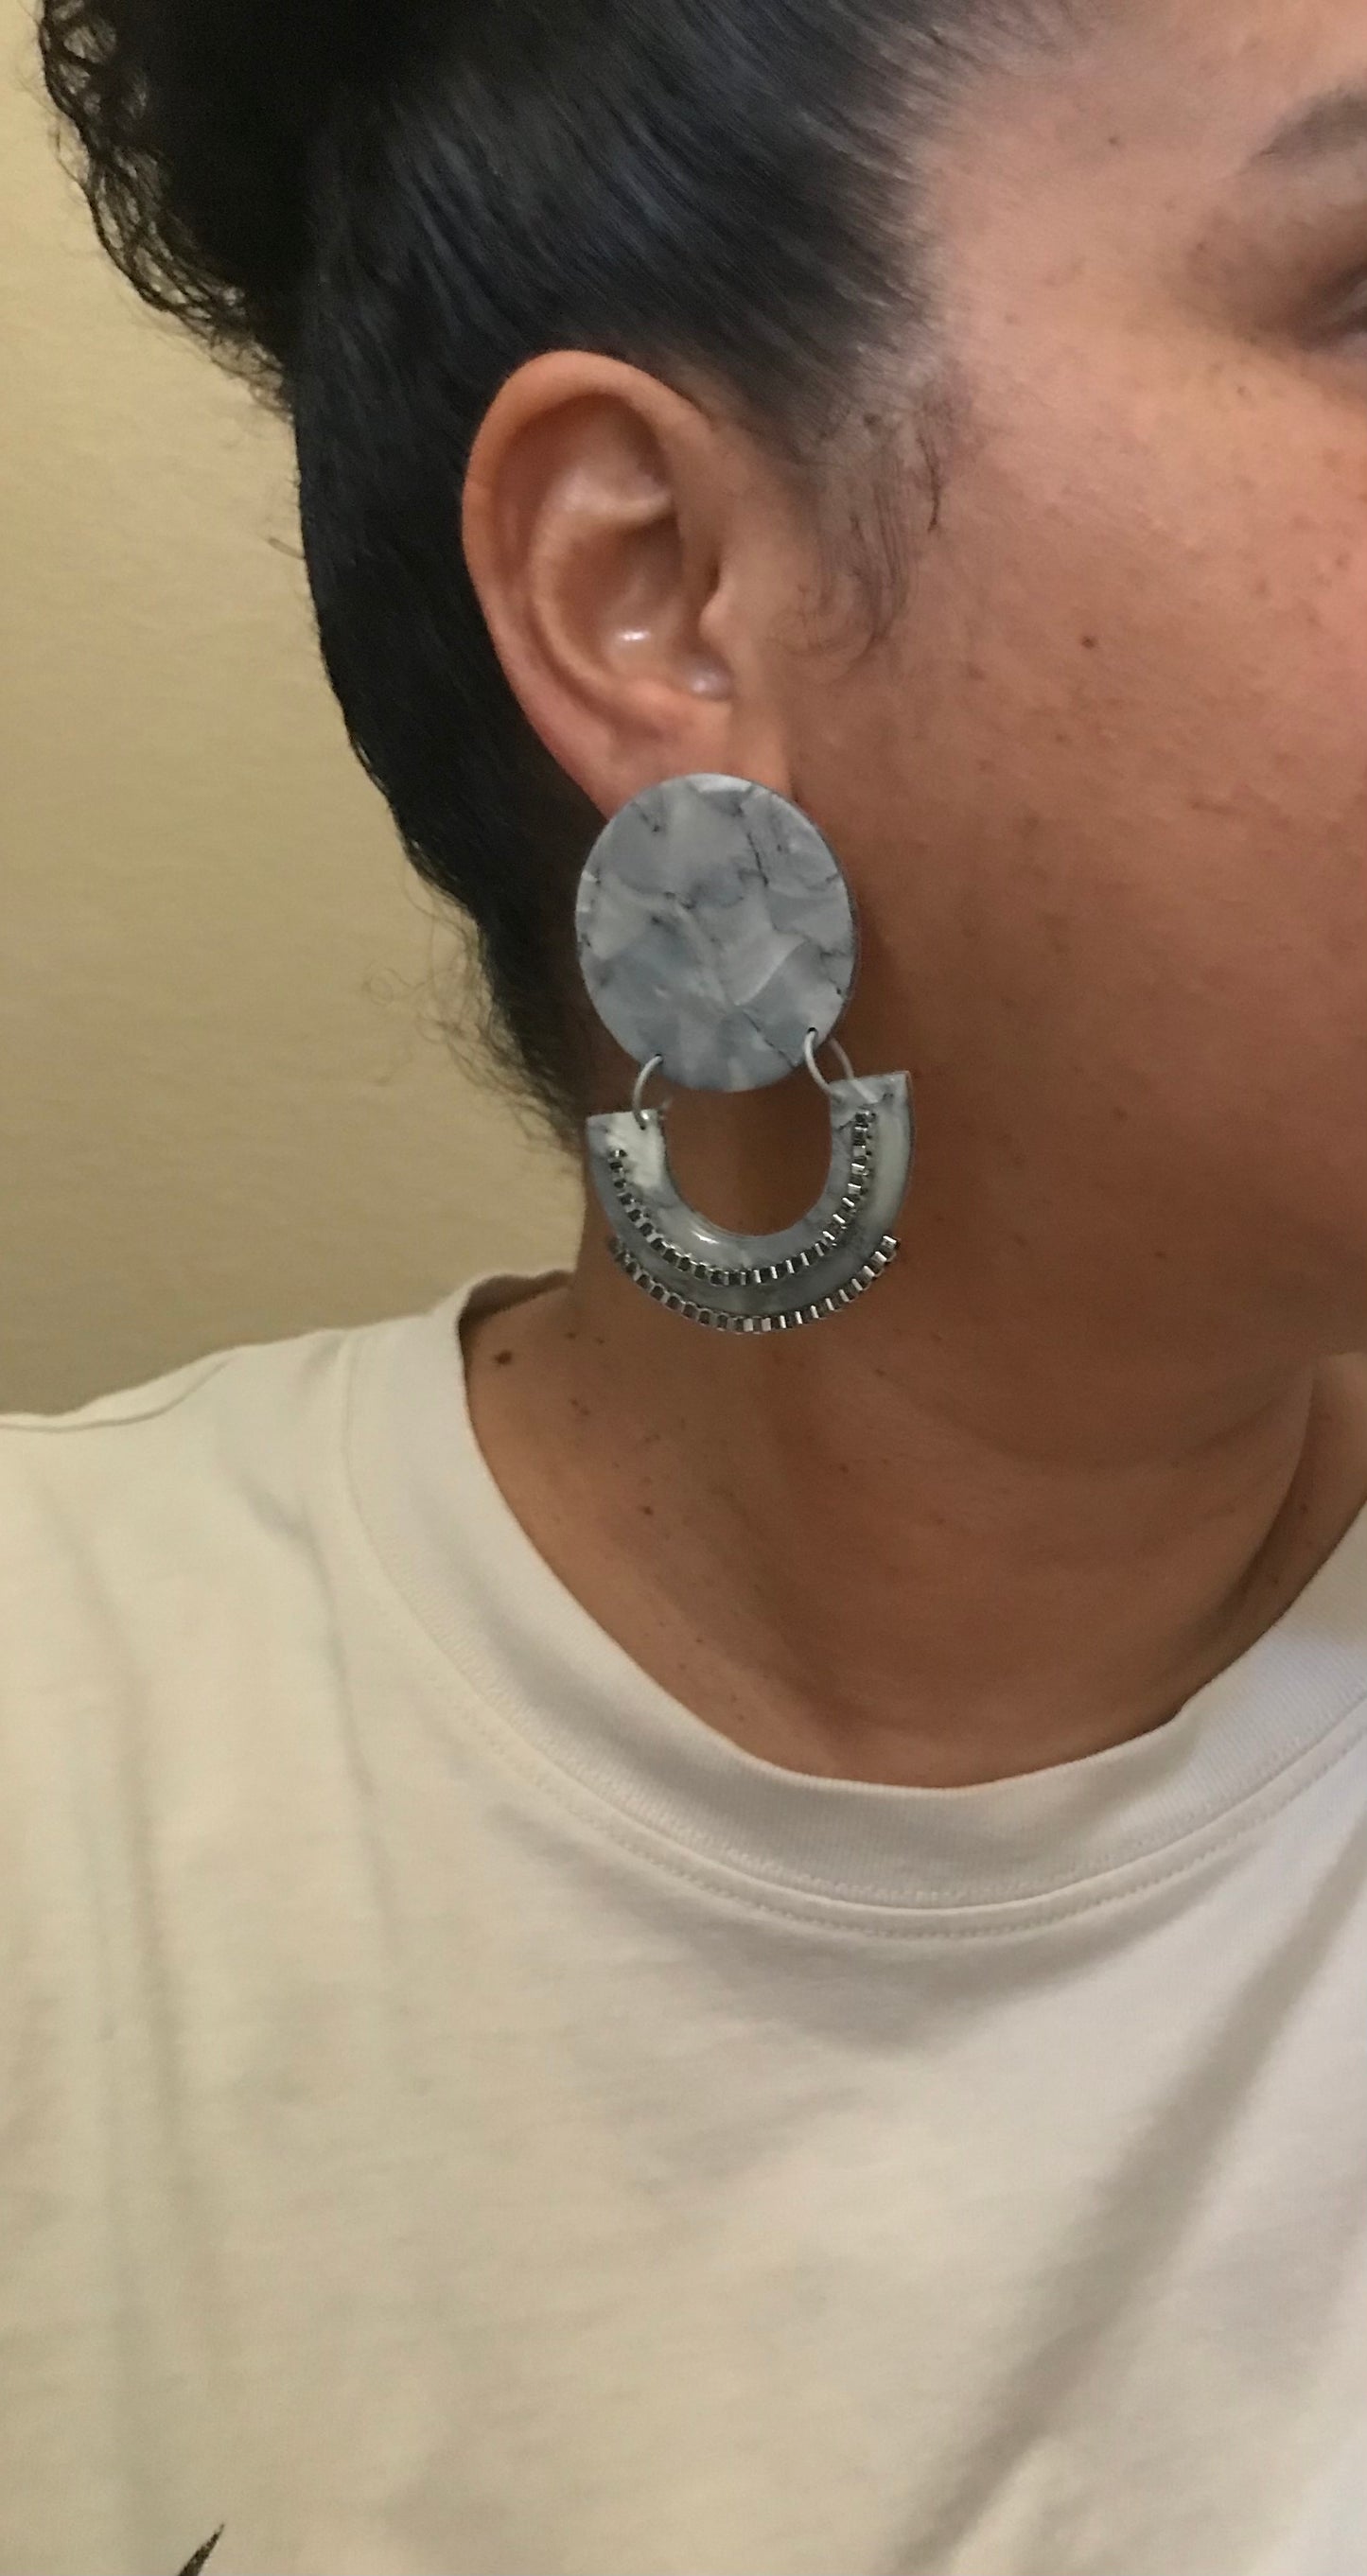 Renaissance earrings